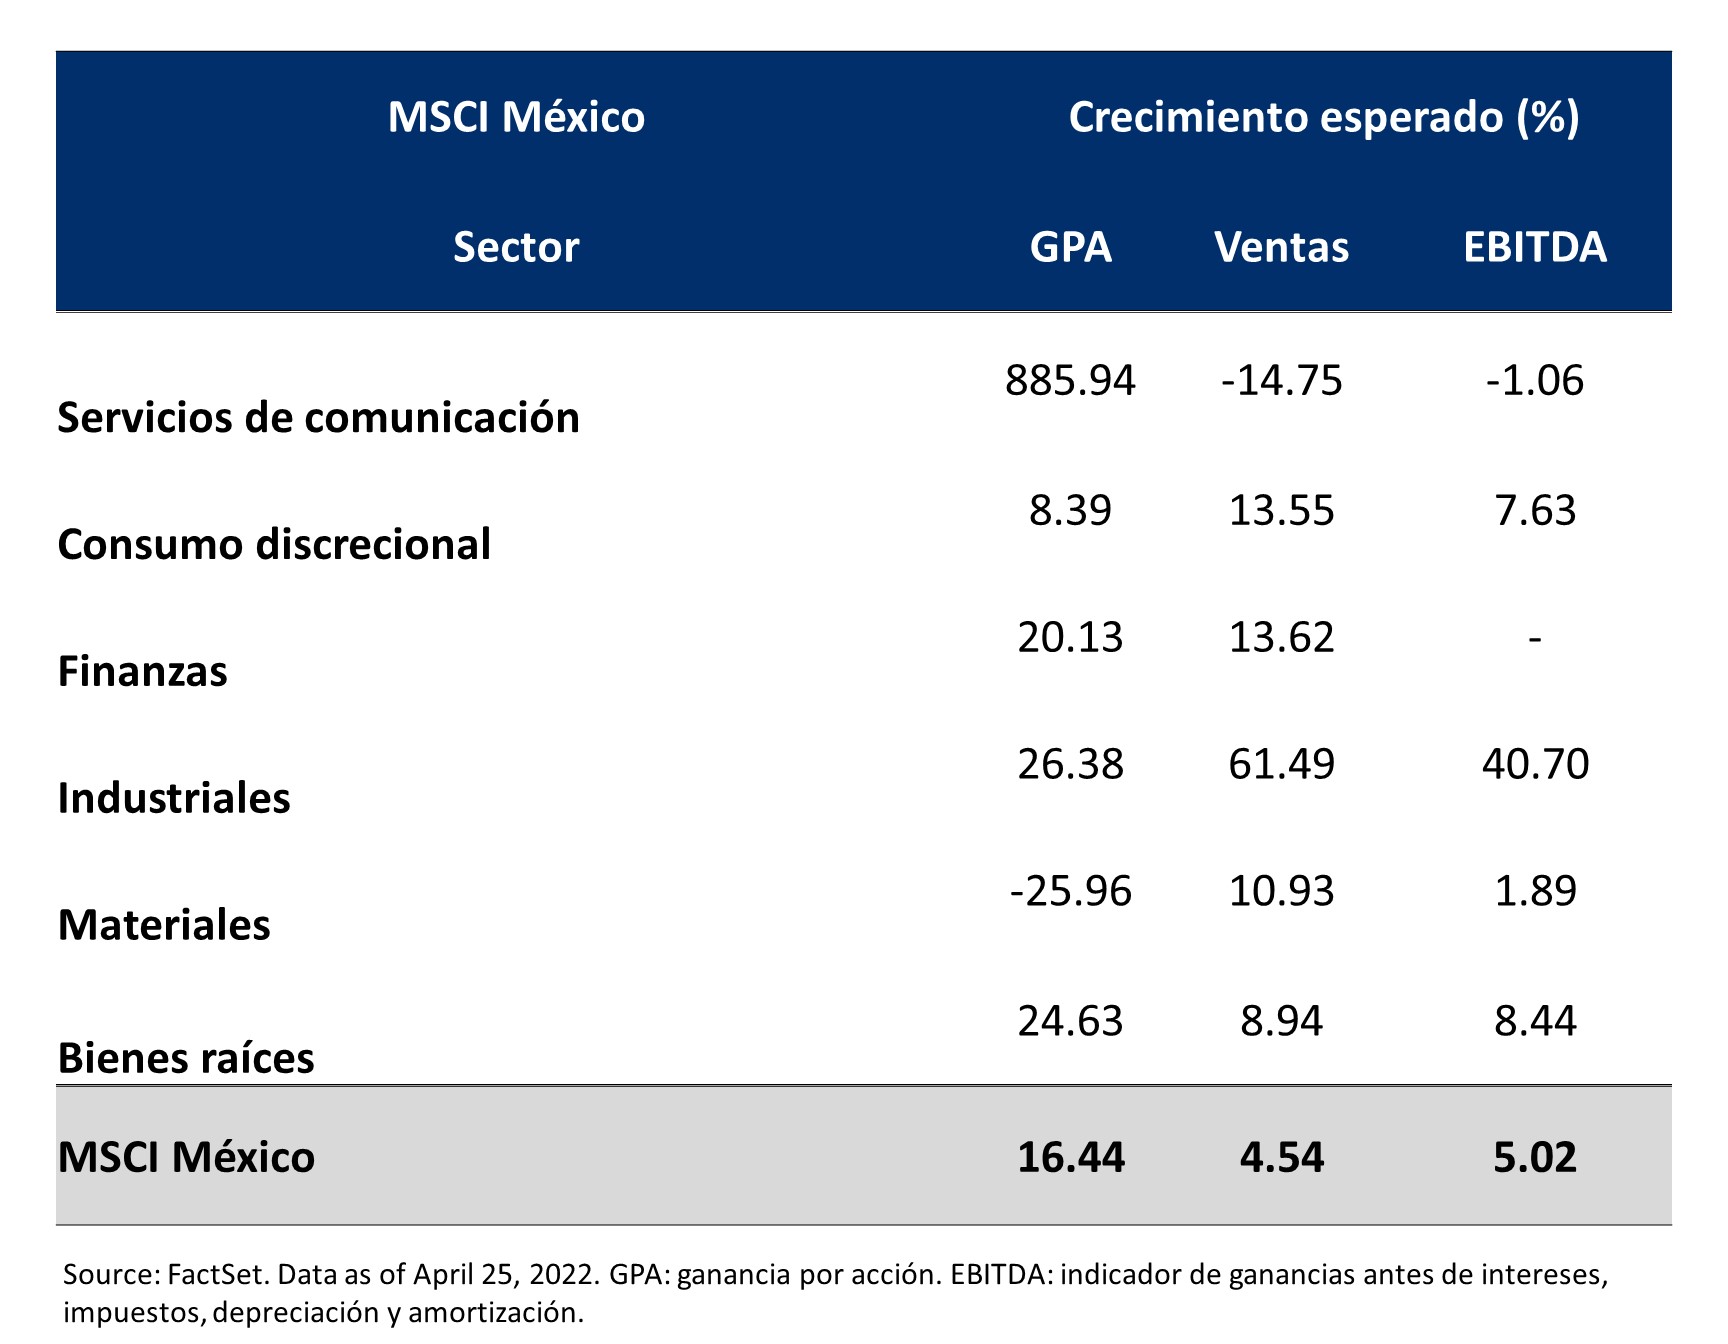 Esta tabla describe las distintas categorías del índice MSCI para México y su crecimiento esperado.